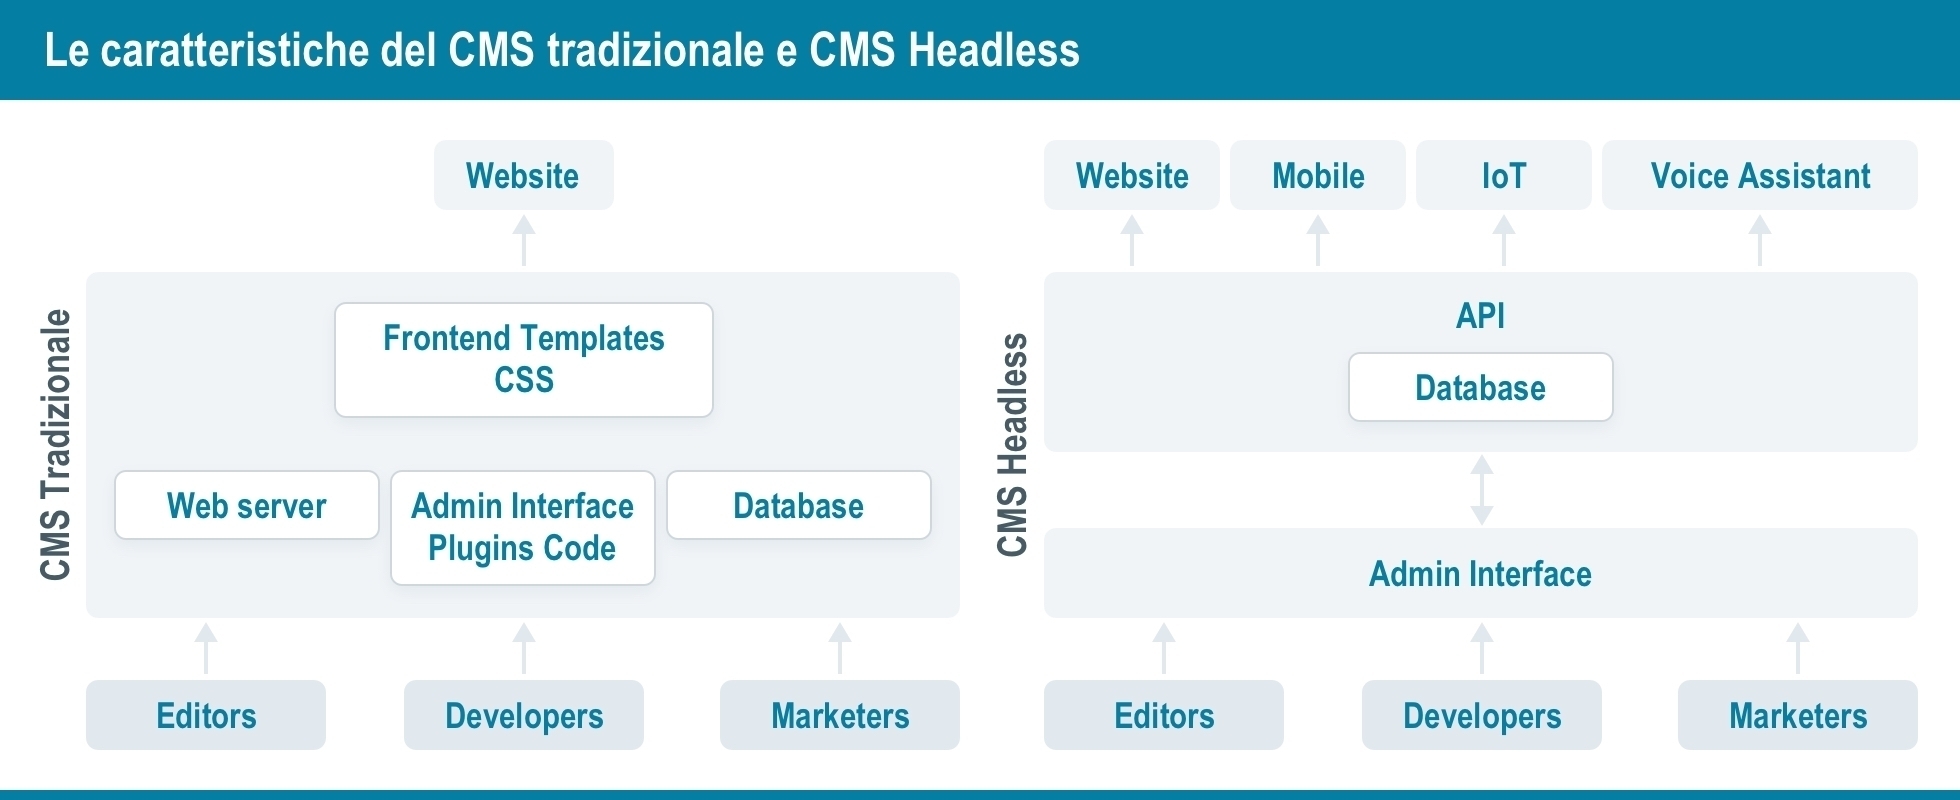 Le caratteristiche del CMS tradizionale e CMS Headless